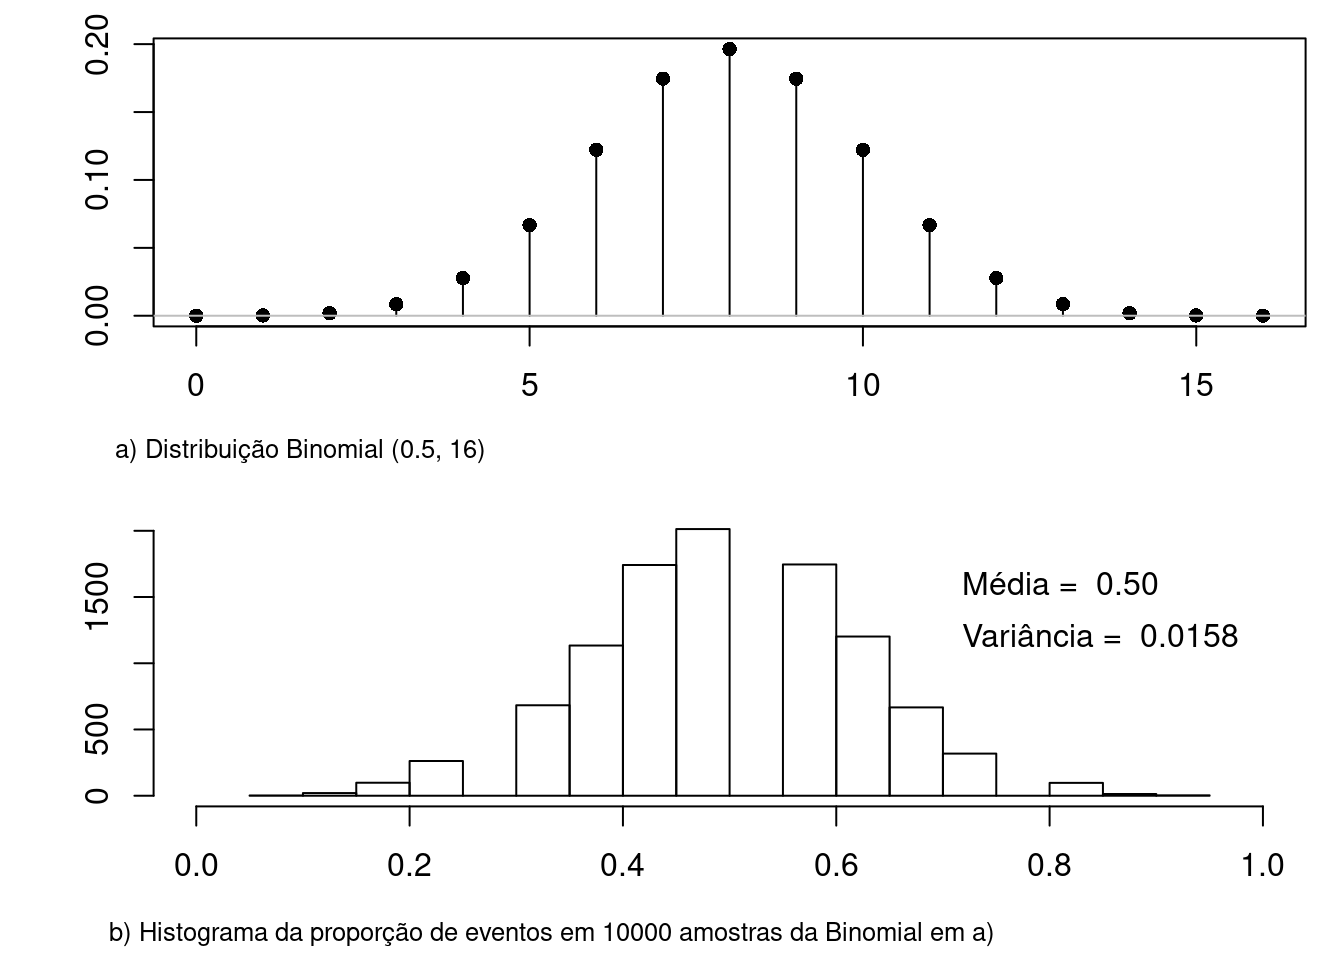 a) gráfico da distribuição Binomial para p = 0,5 e n = 16; b) histograma da proporção de eventos em 10000 amostras extraídas da distribuição binomial de a). A média da proporção de eventos foi de 0,50 e a variância 0,0158, sendo os valores teóricos iguais a 0,5 e 0,015625, respectivamente.